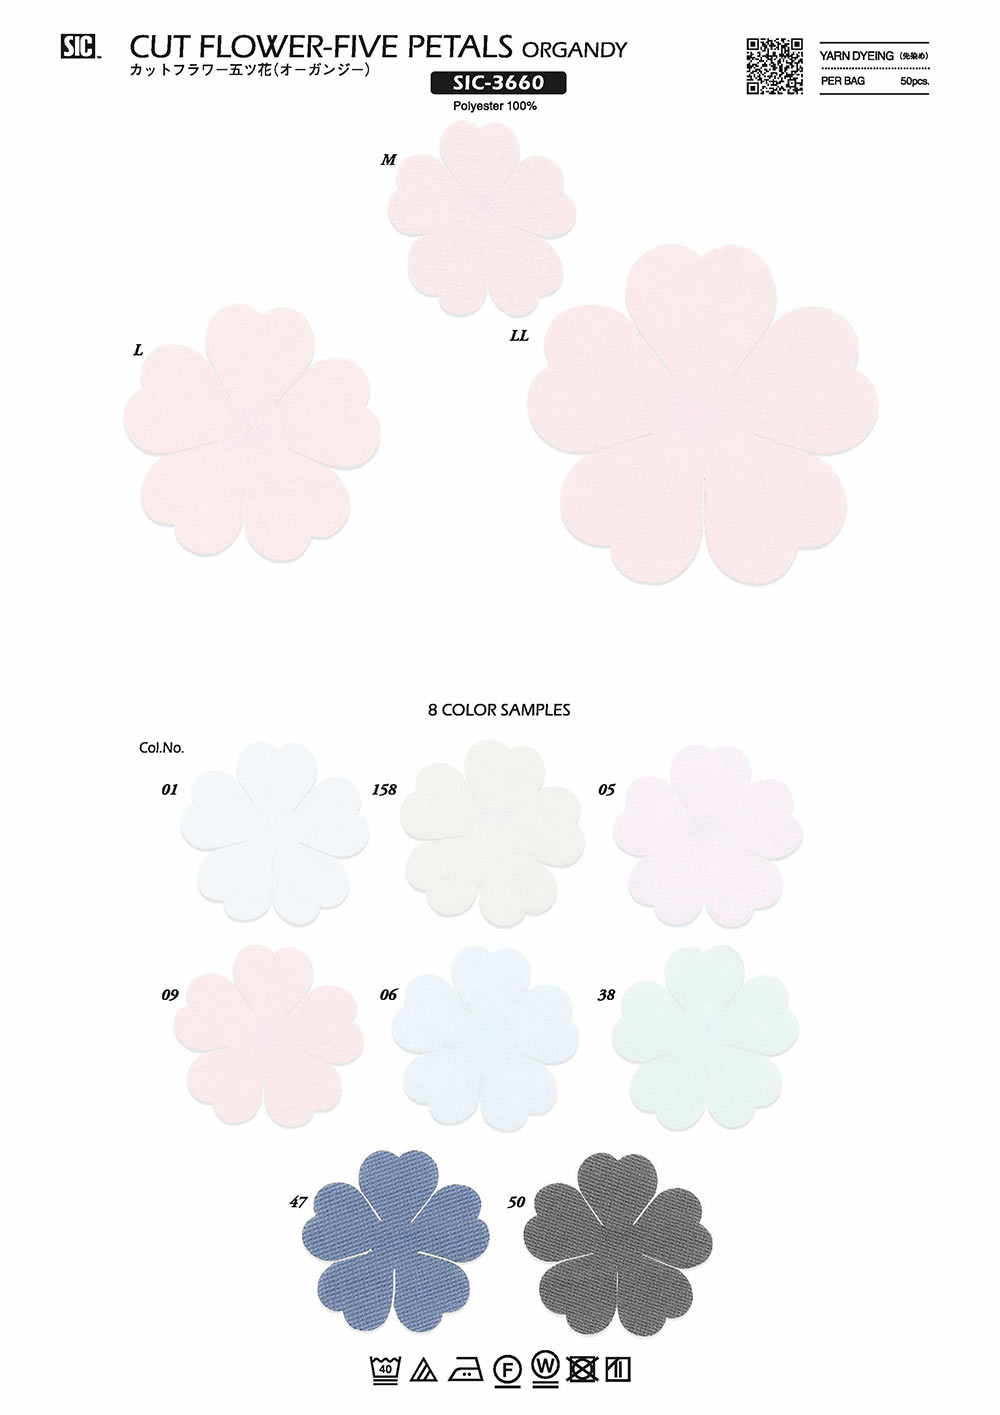 SIC-3660 Flor Cortada Cinco Flores (Organdí)[Mercancías Misceláneas Y Otros] SHINDO(SIC)